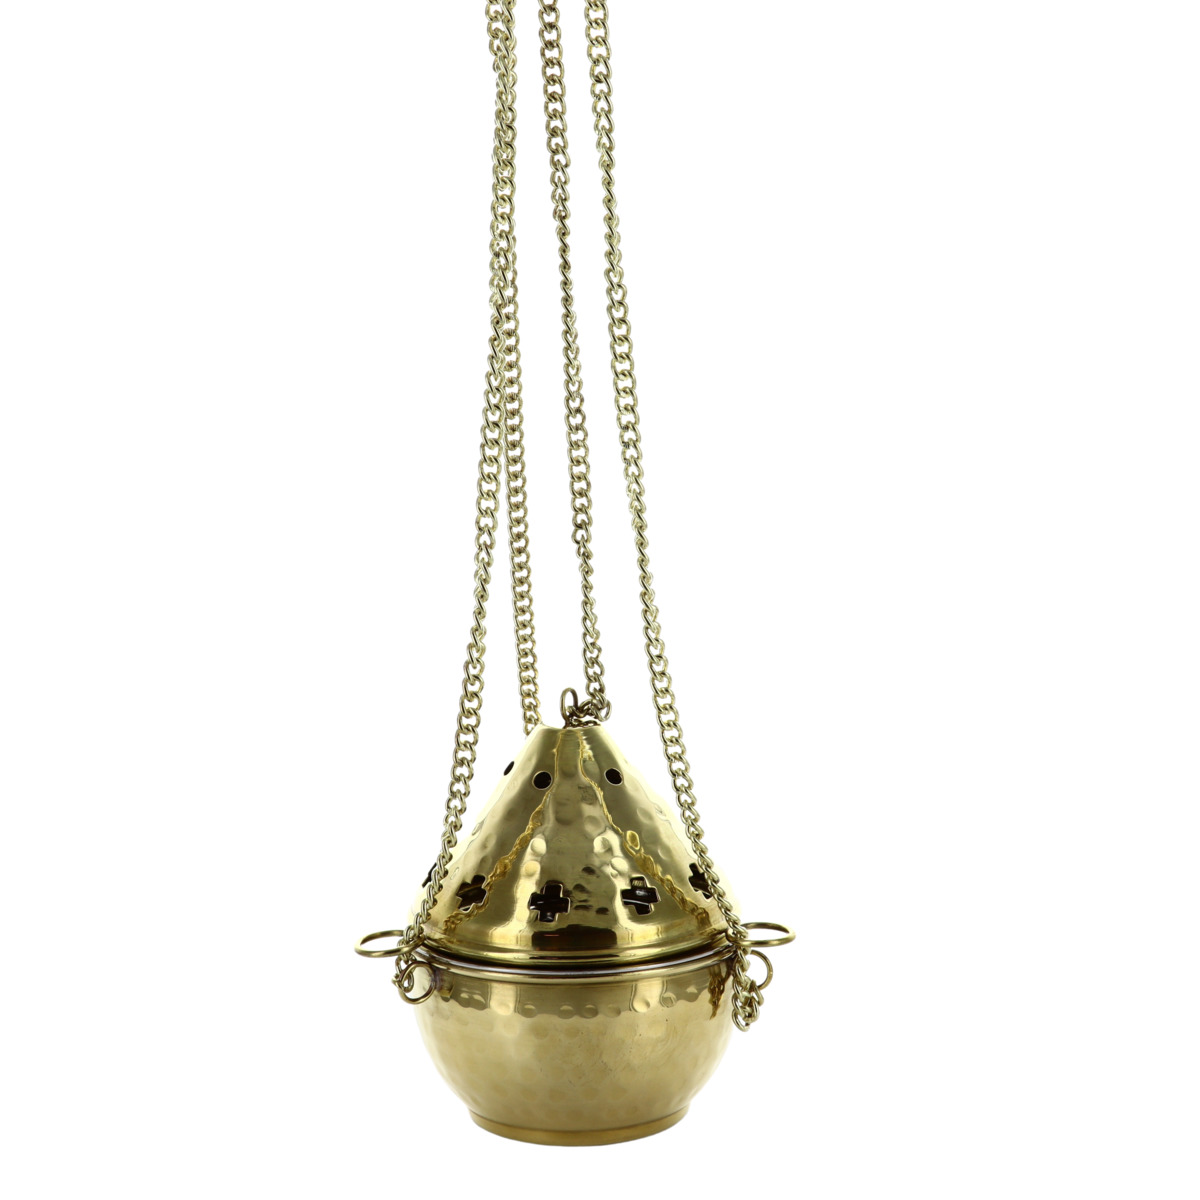 Encensoir d'église doré martelé double cuve H.14 cm Ø 11 cm longeur des  chaînes 88 cm. 